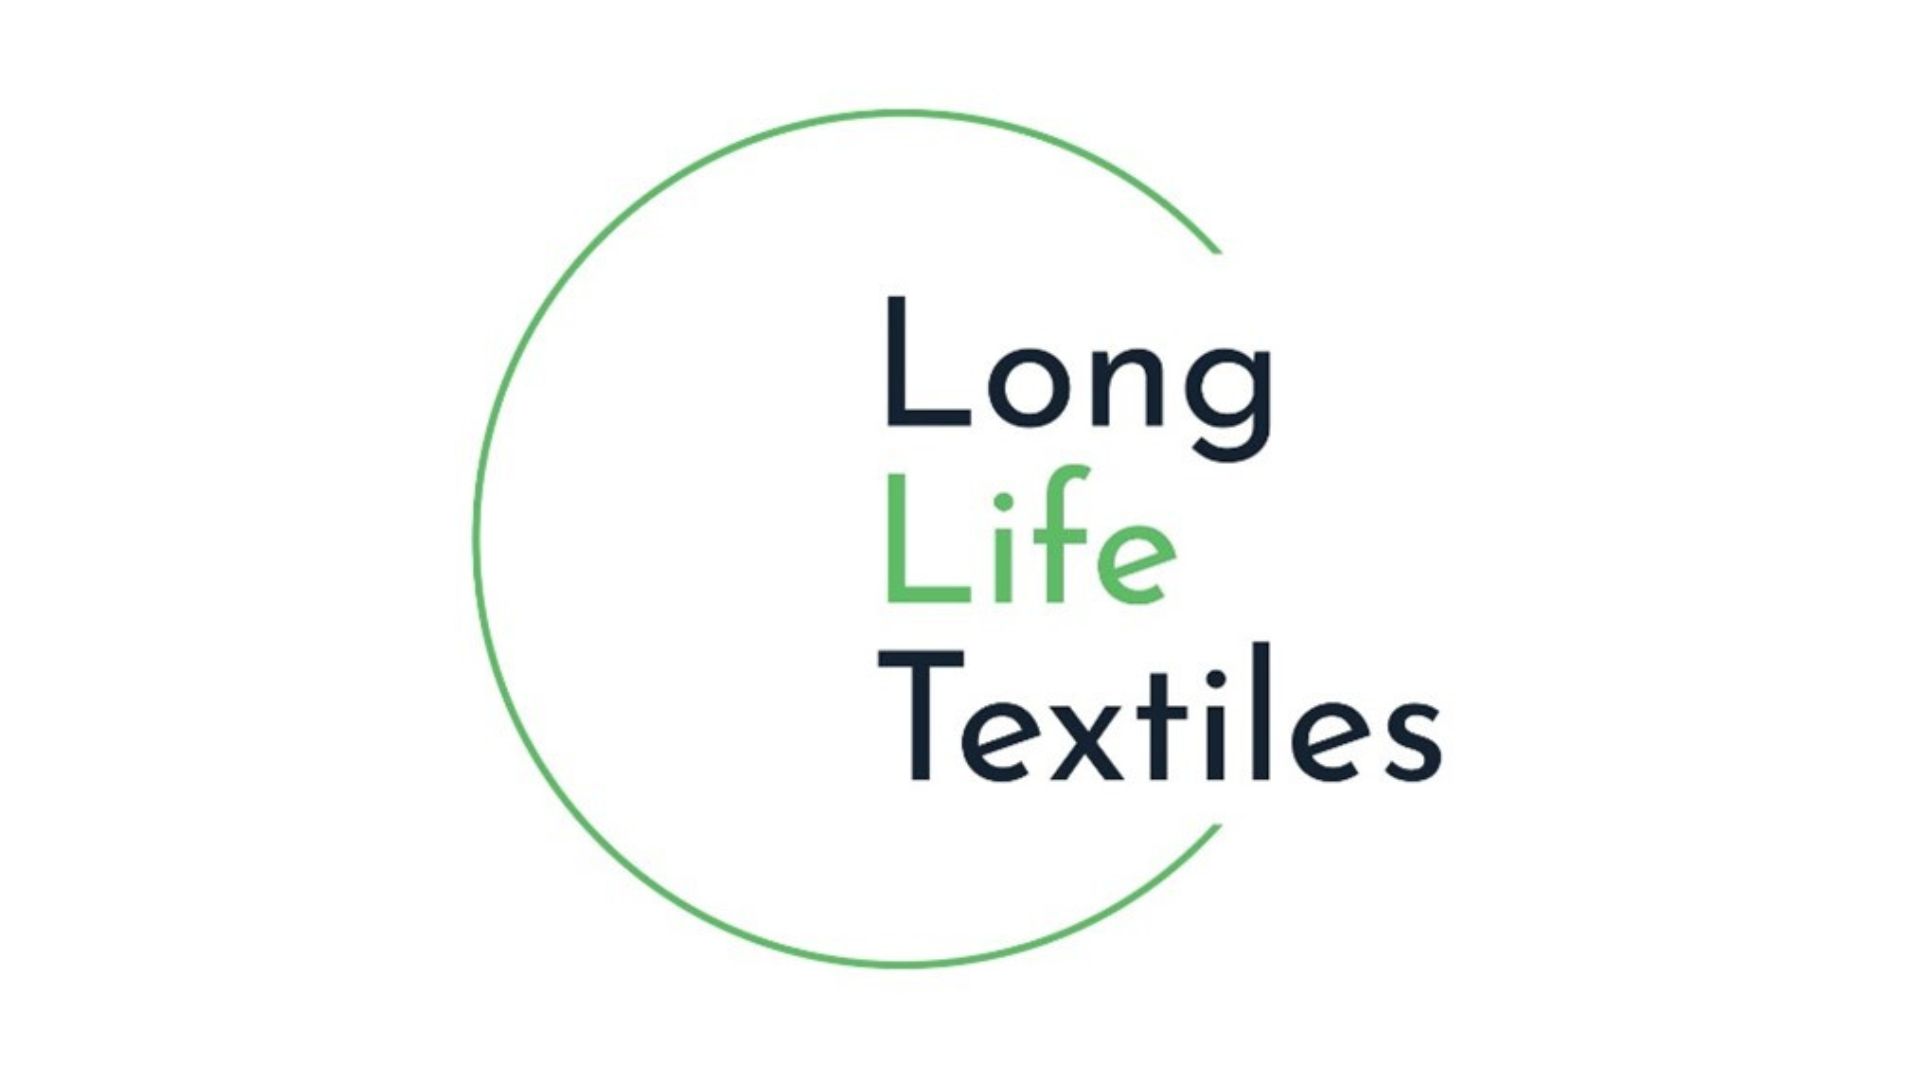 Barcelona Centre de Disseny lidera el proyecto Long Life Textiles, coimpulsado por MODACC, Inèdit, Nucreatives, Nanimarquina y Retexcycle